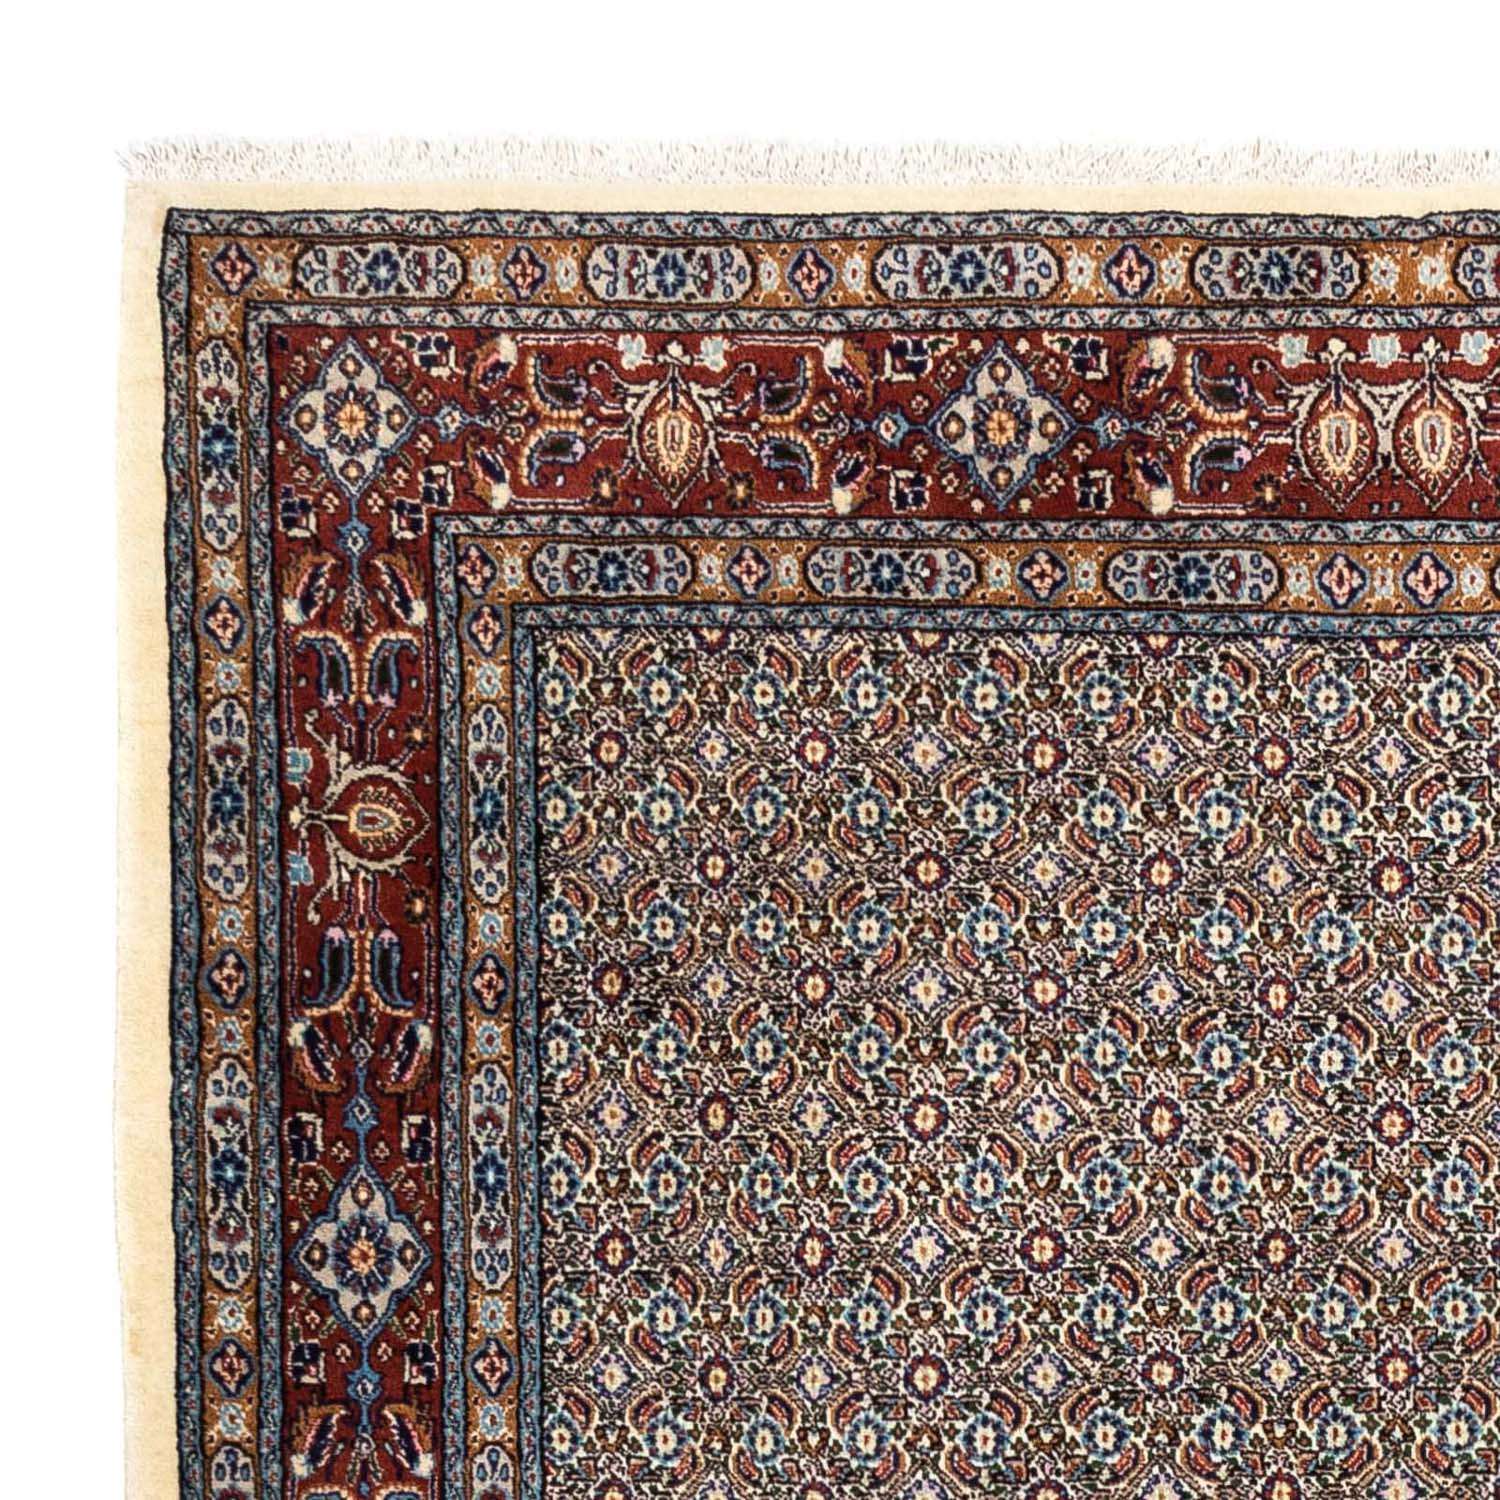 Tapis persan - Classique - 240 x 172 cm - beige